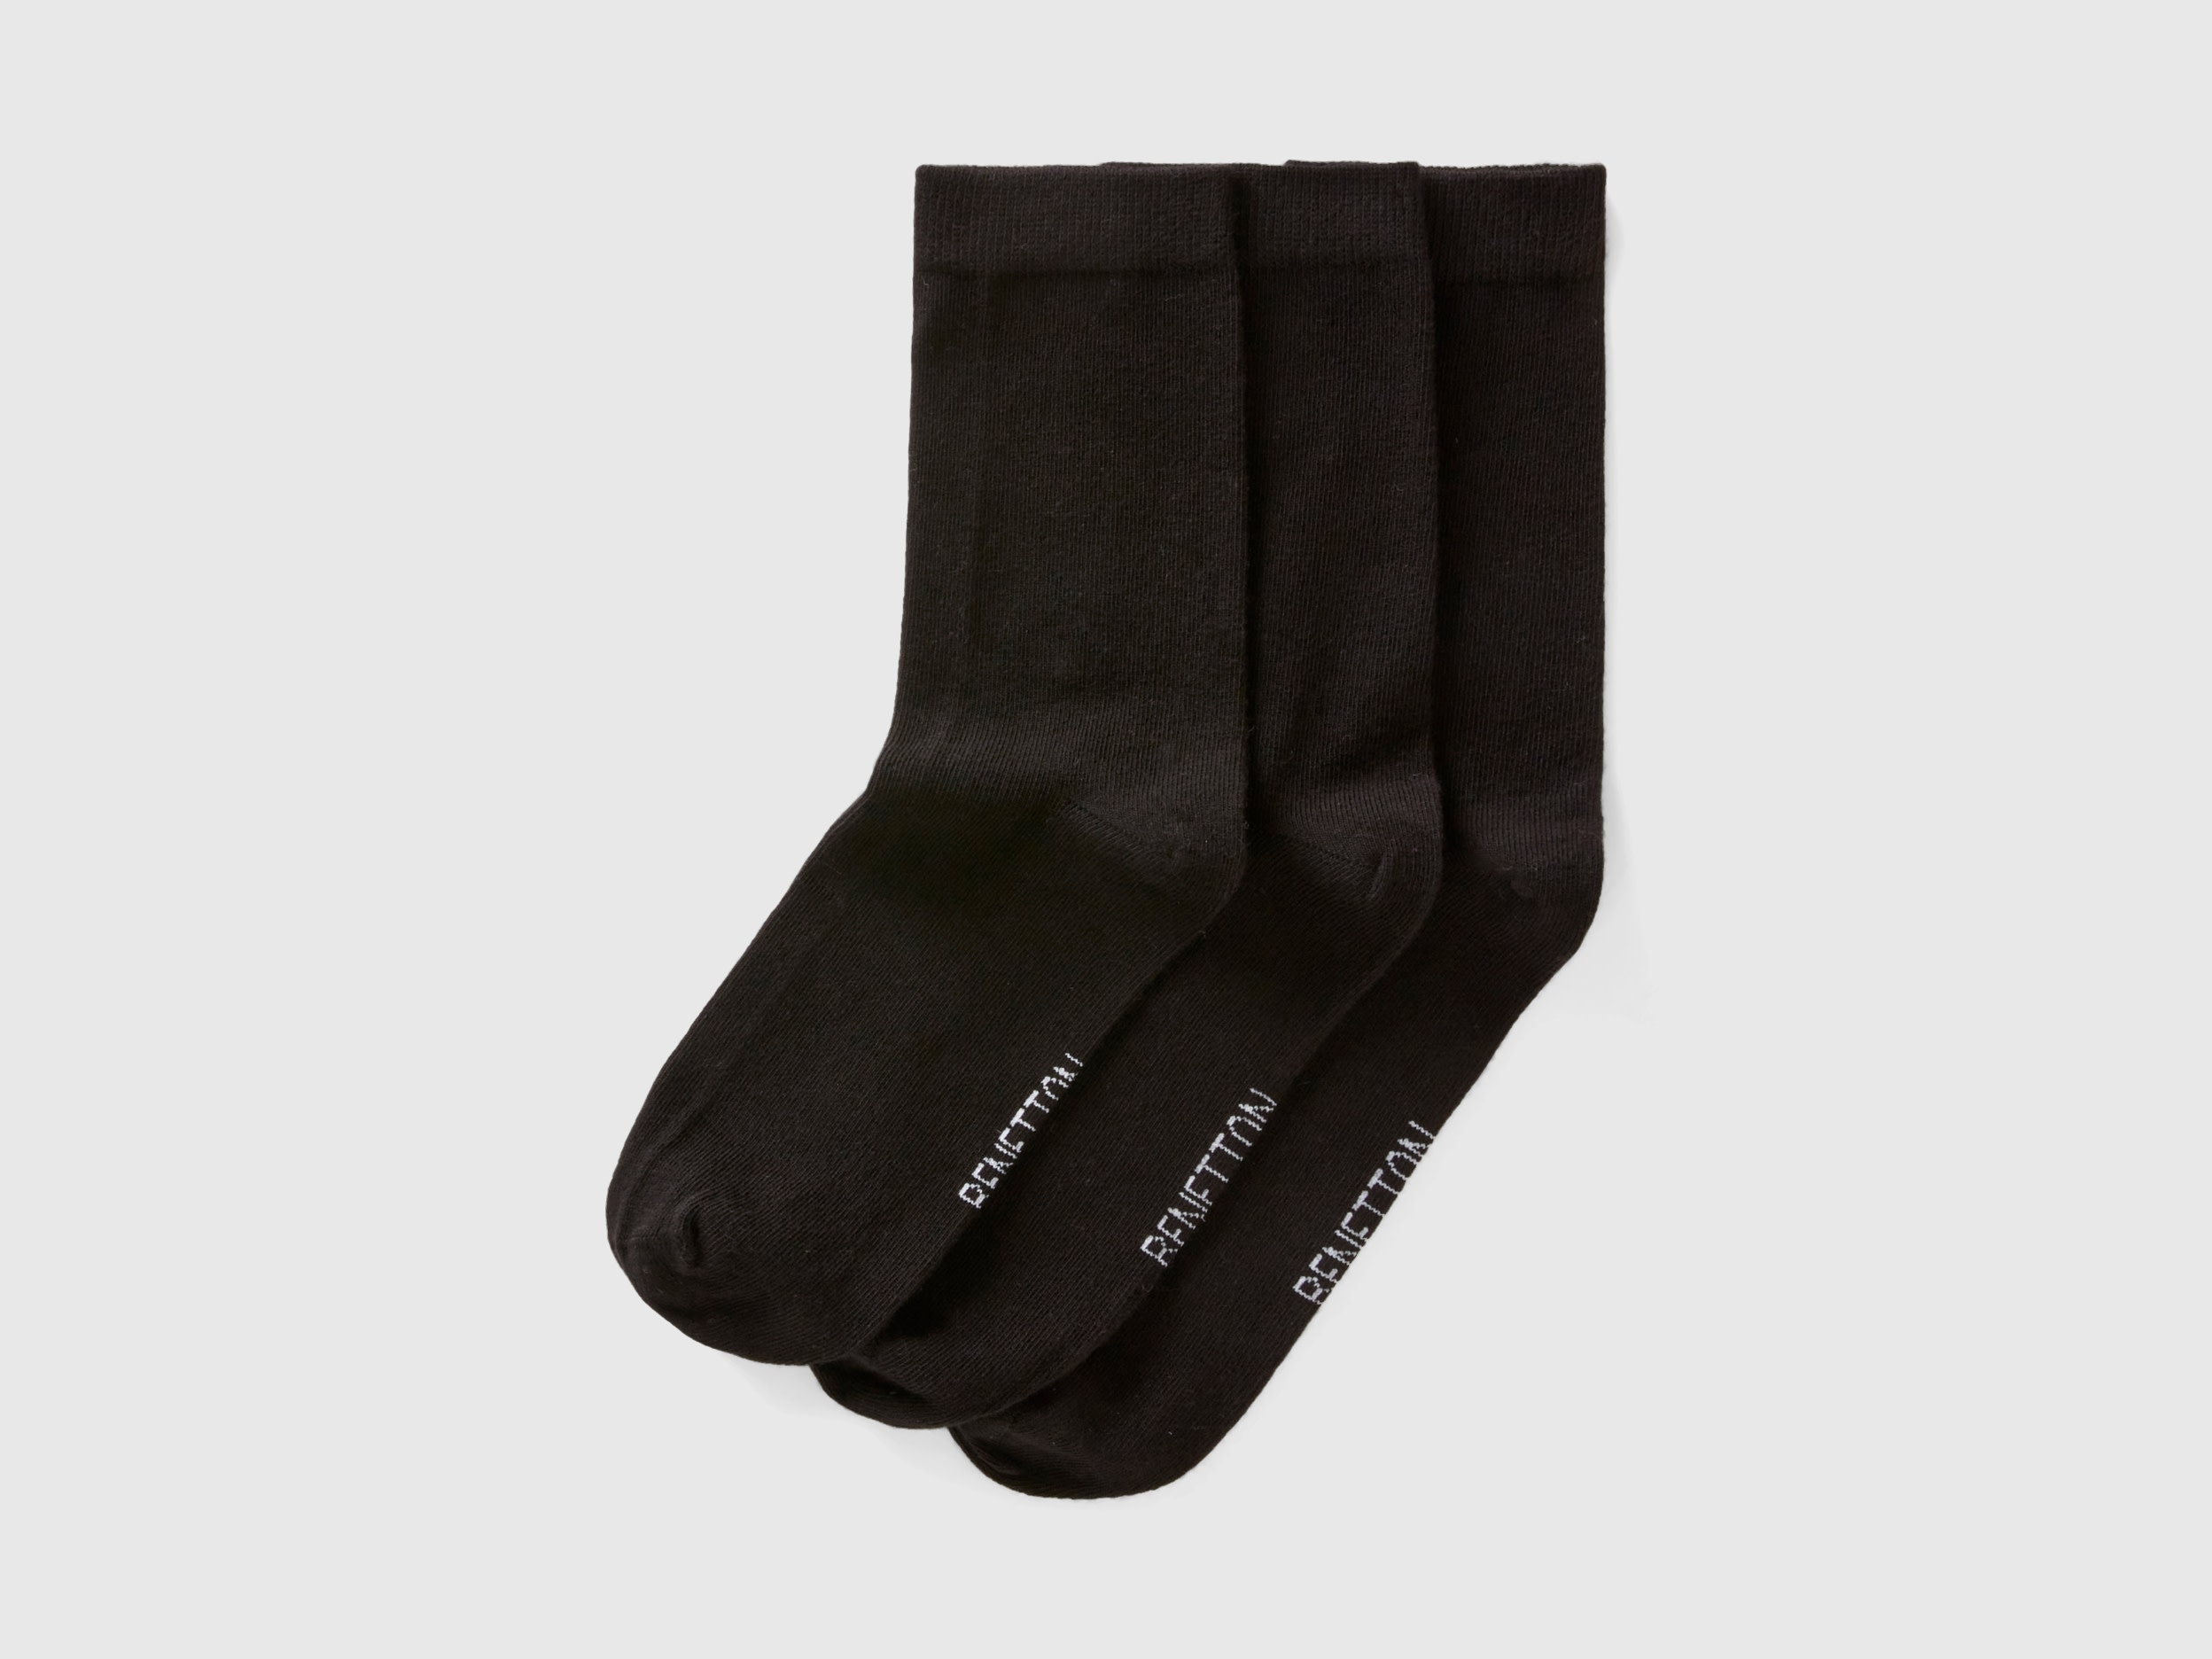 Image of Benetton, Short Sock Set, size 43-46, Black, Women